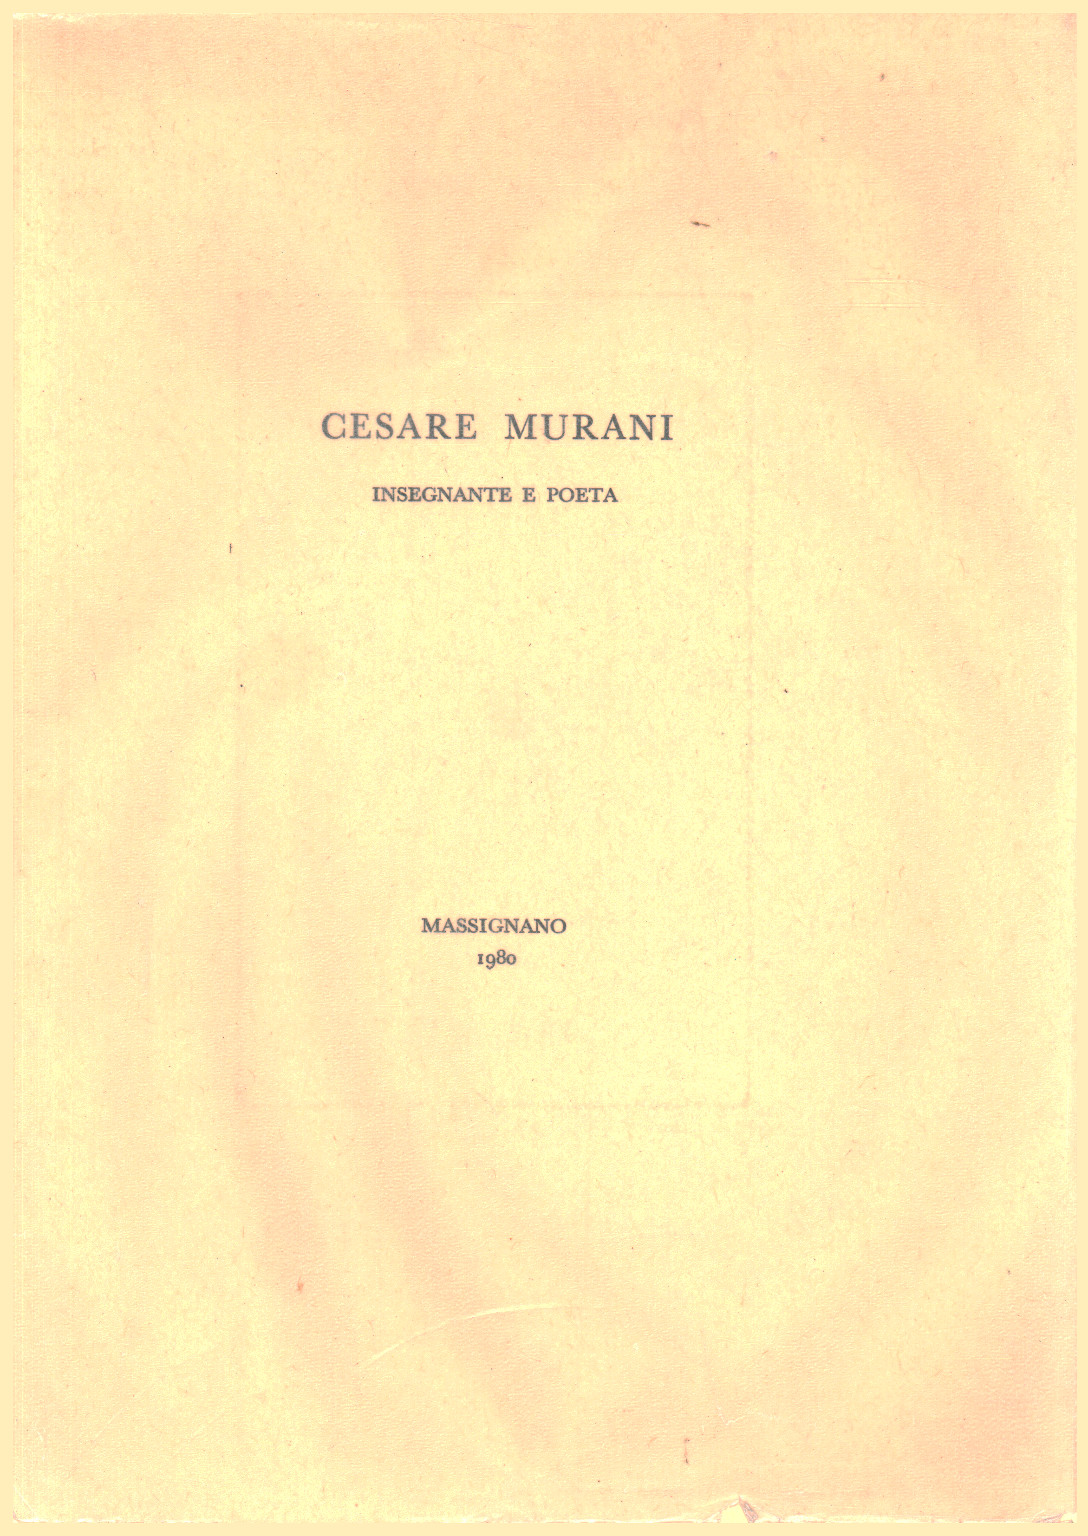 Cesare Murani. Lehrer und dichter, s.zu.